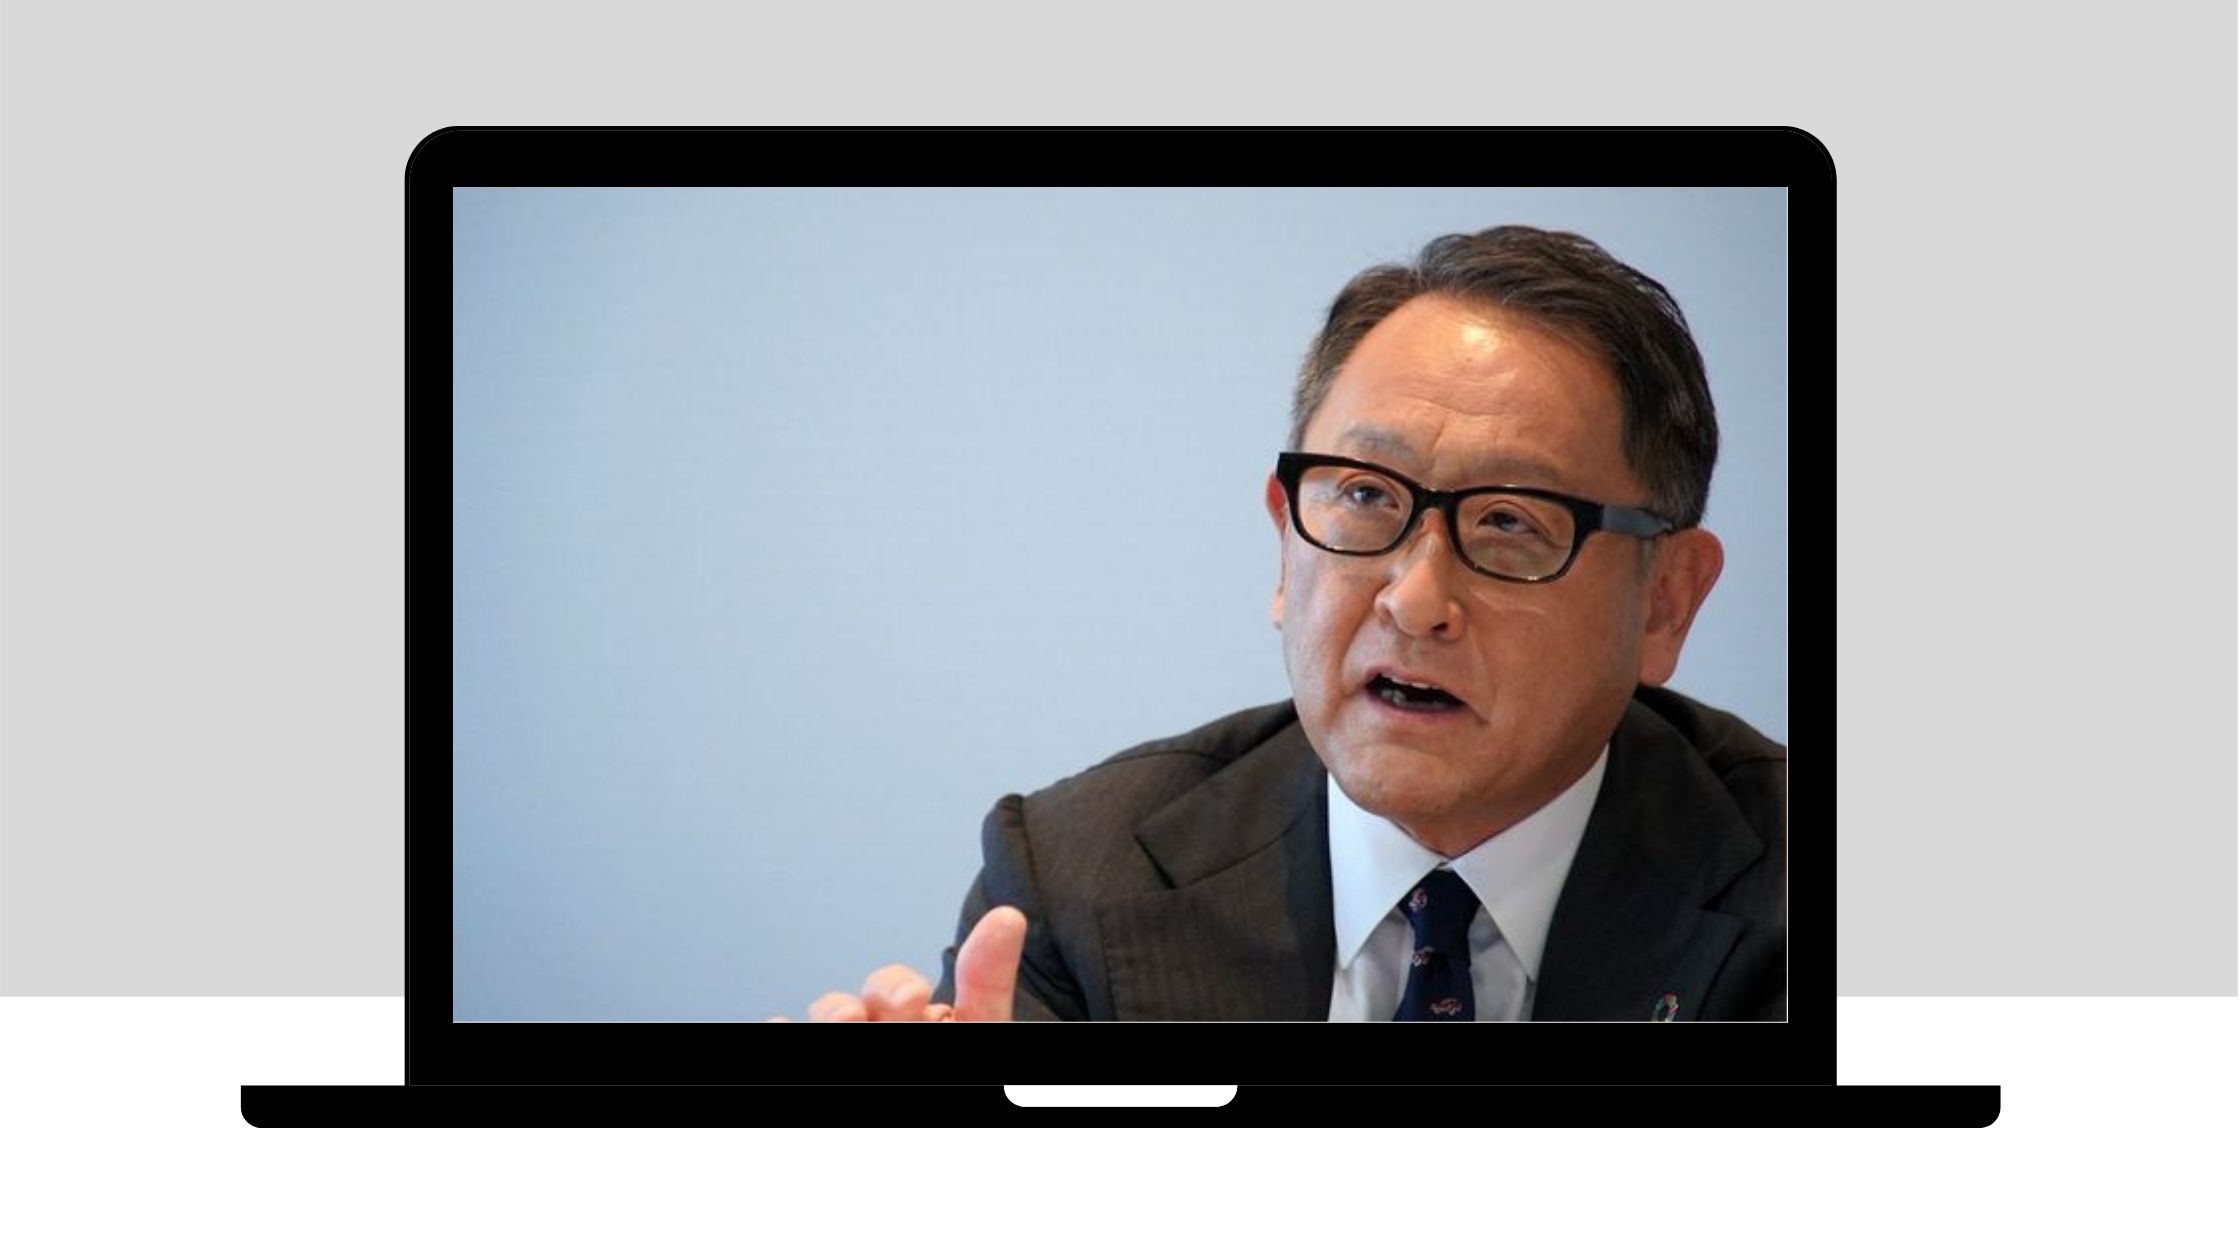 世界のトヨタ自動車の第11代代表取締役社長 の豊田章男さん 日本の経営者の顔として注目度と実績は抜群で 世界の自動車業界に多大な貢献をしています そんな実業家の豊田章男さんの 心に響く名言 を紹介します トピックスラボ